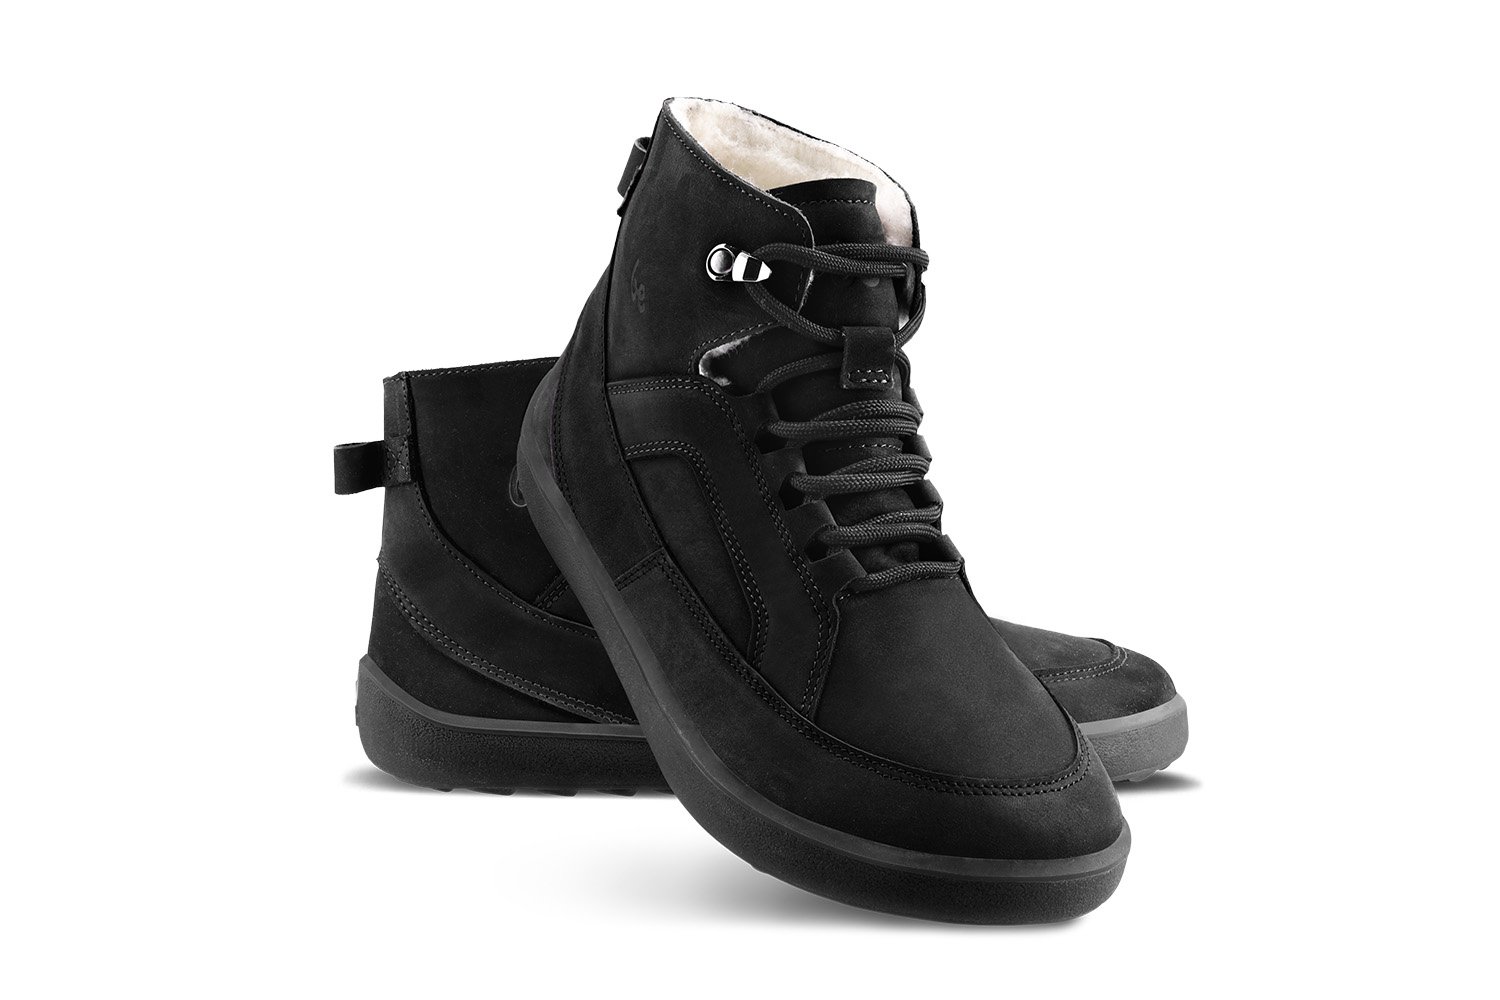 Barefoot Boots Be Lenka York - All Black | Be Lenka